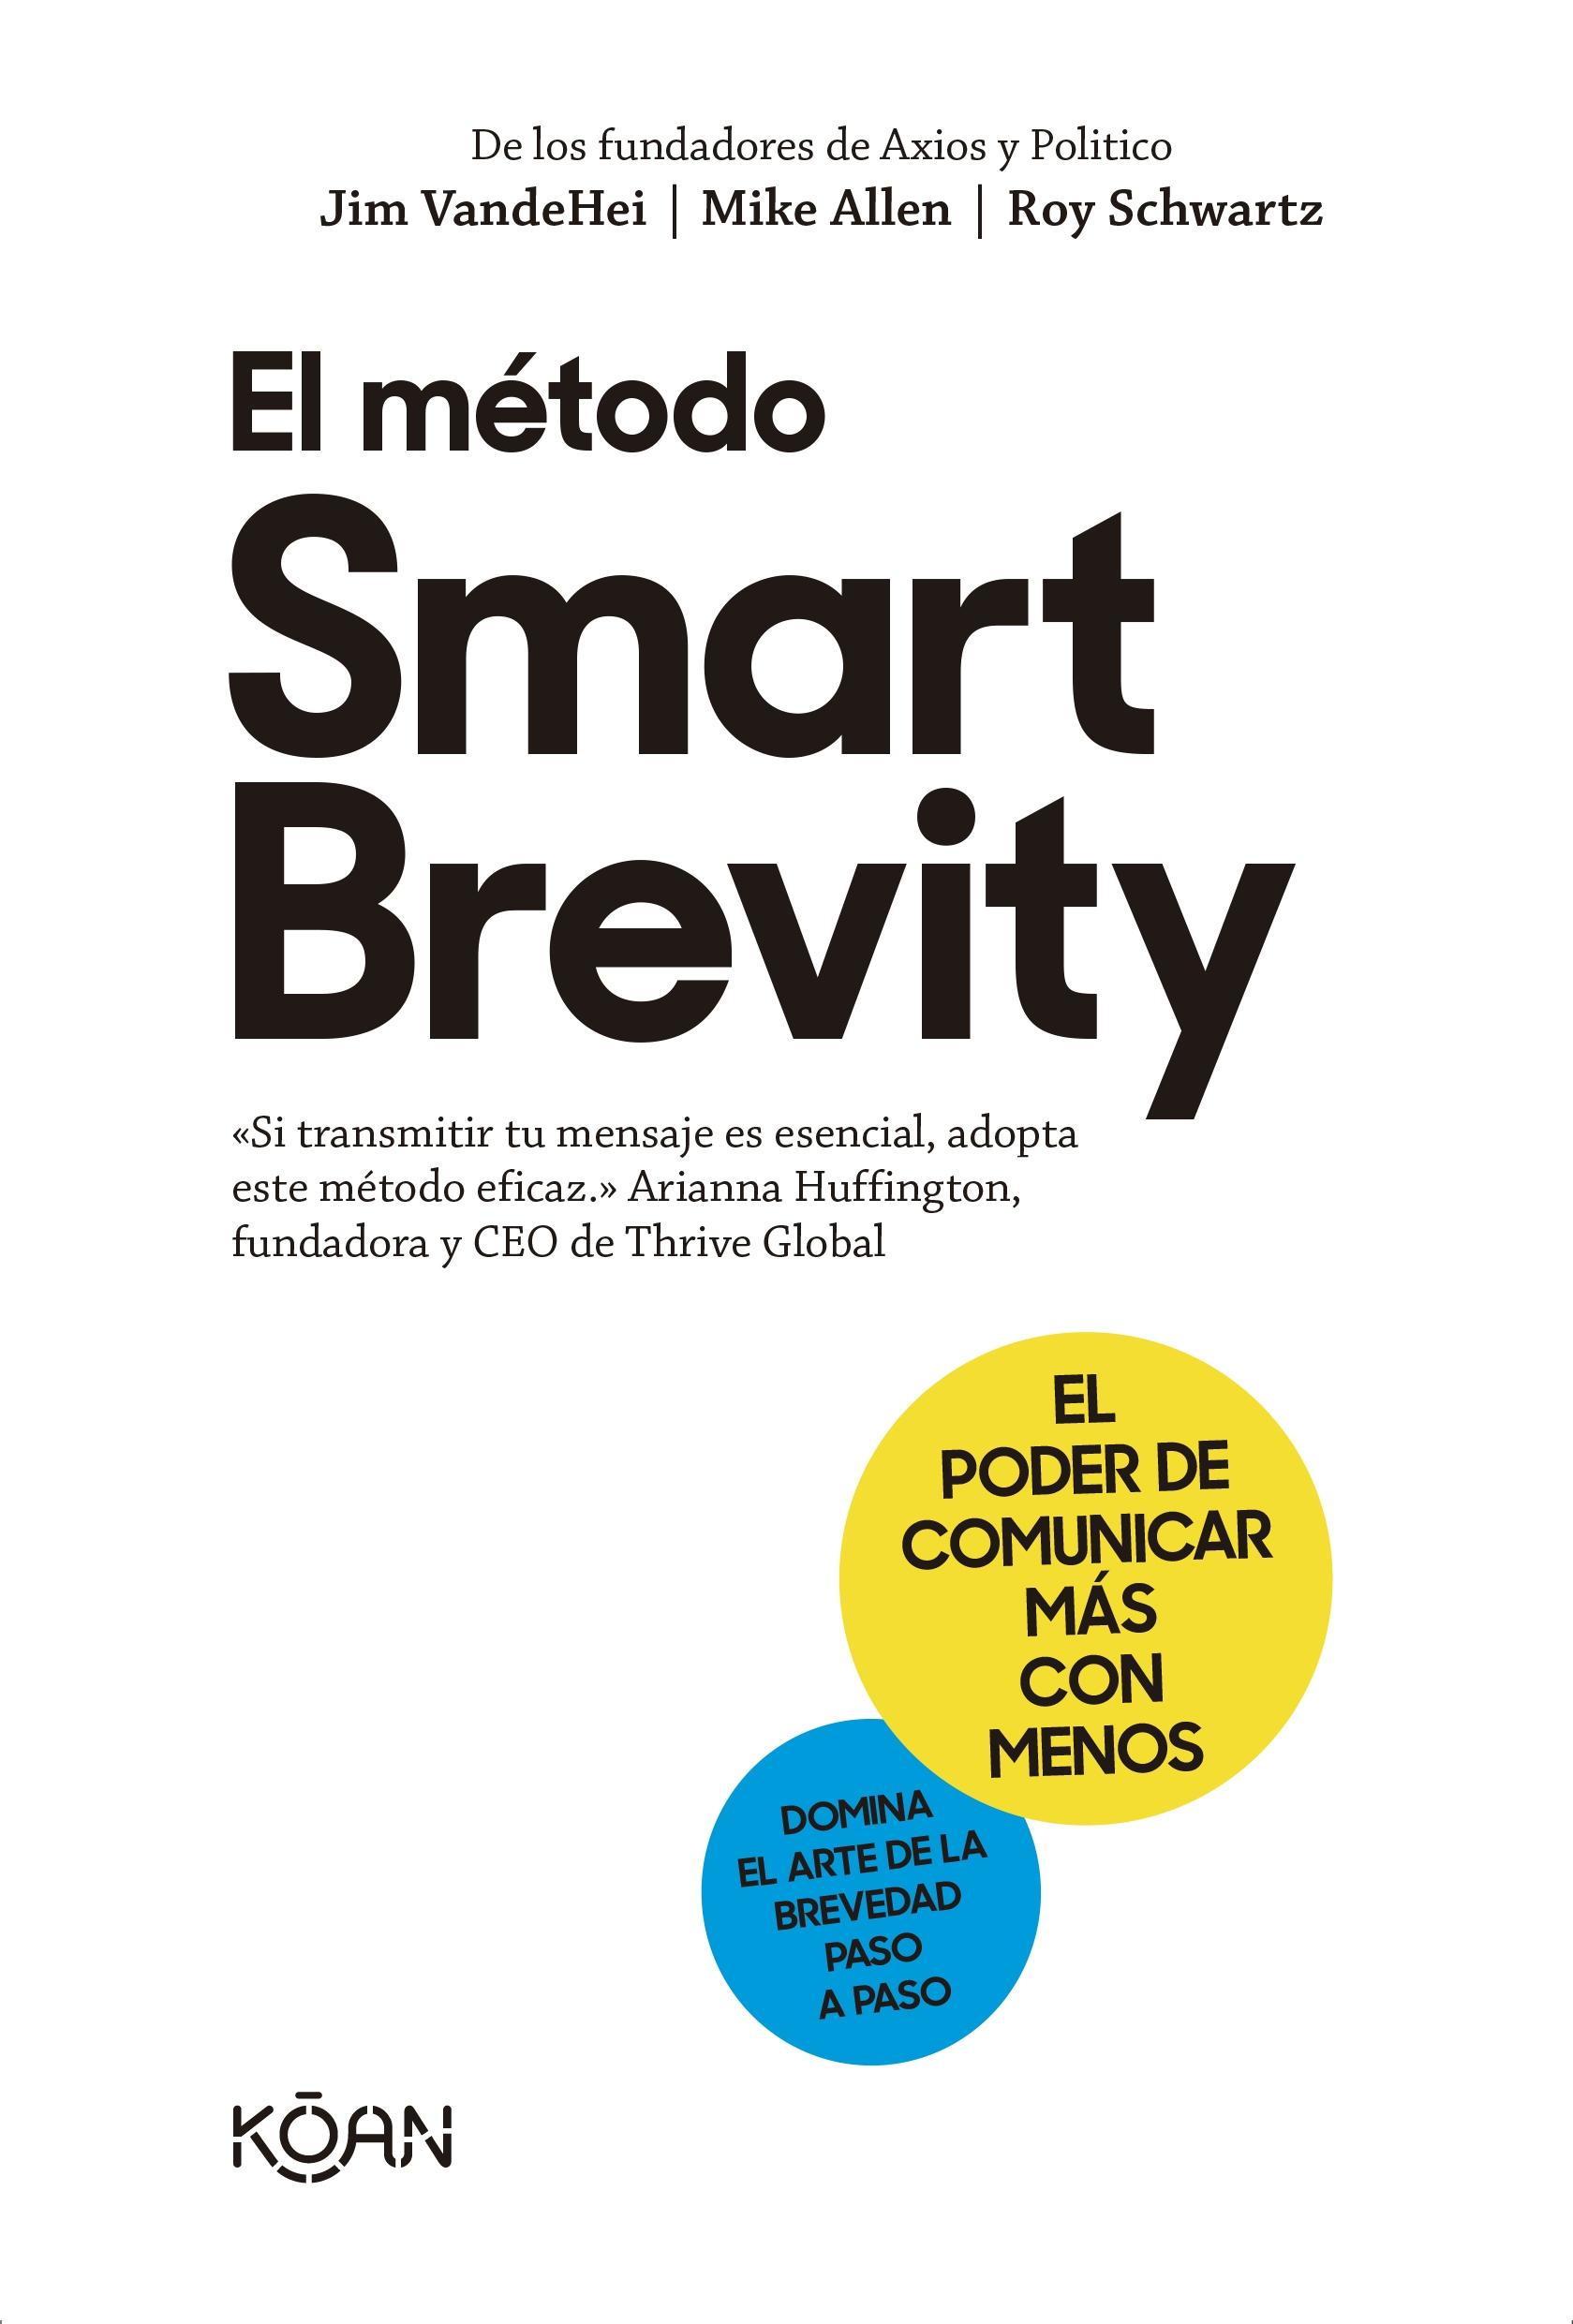 METODO SMART BREVITY, EL "EL PODER DE COMUNICAR MÁS CON MENOS"